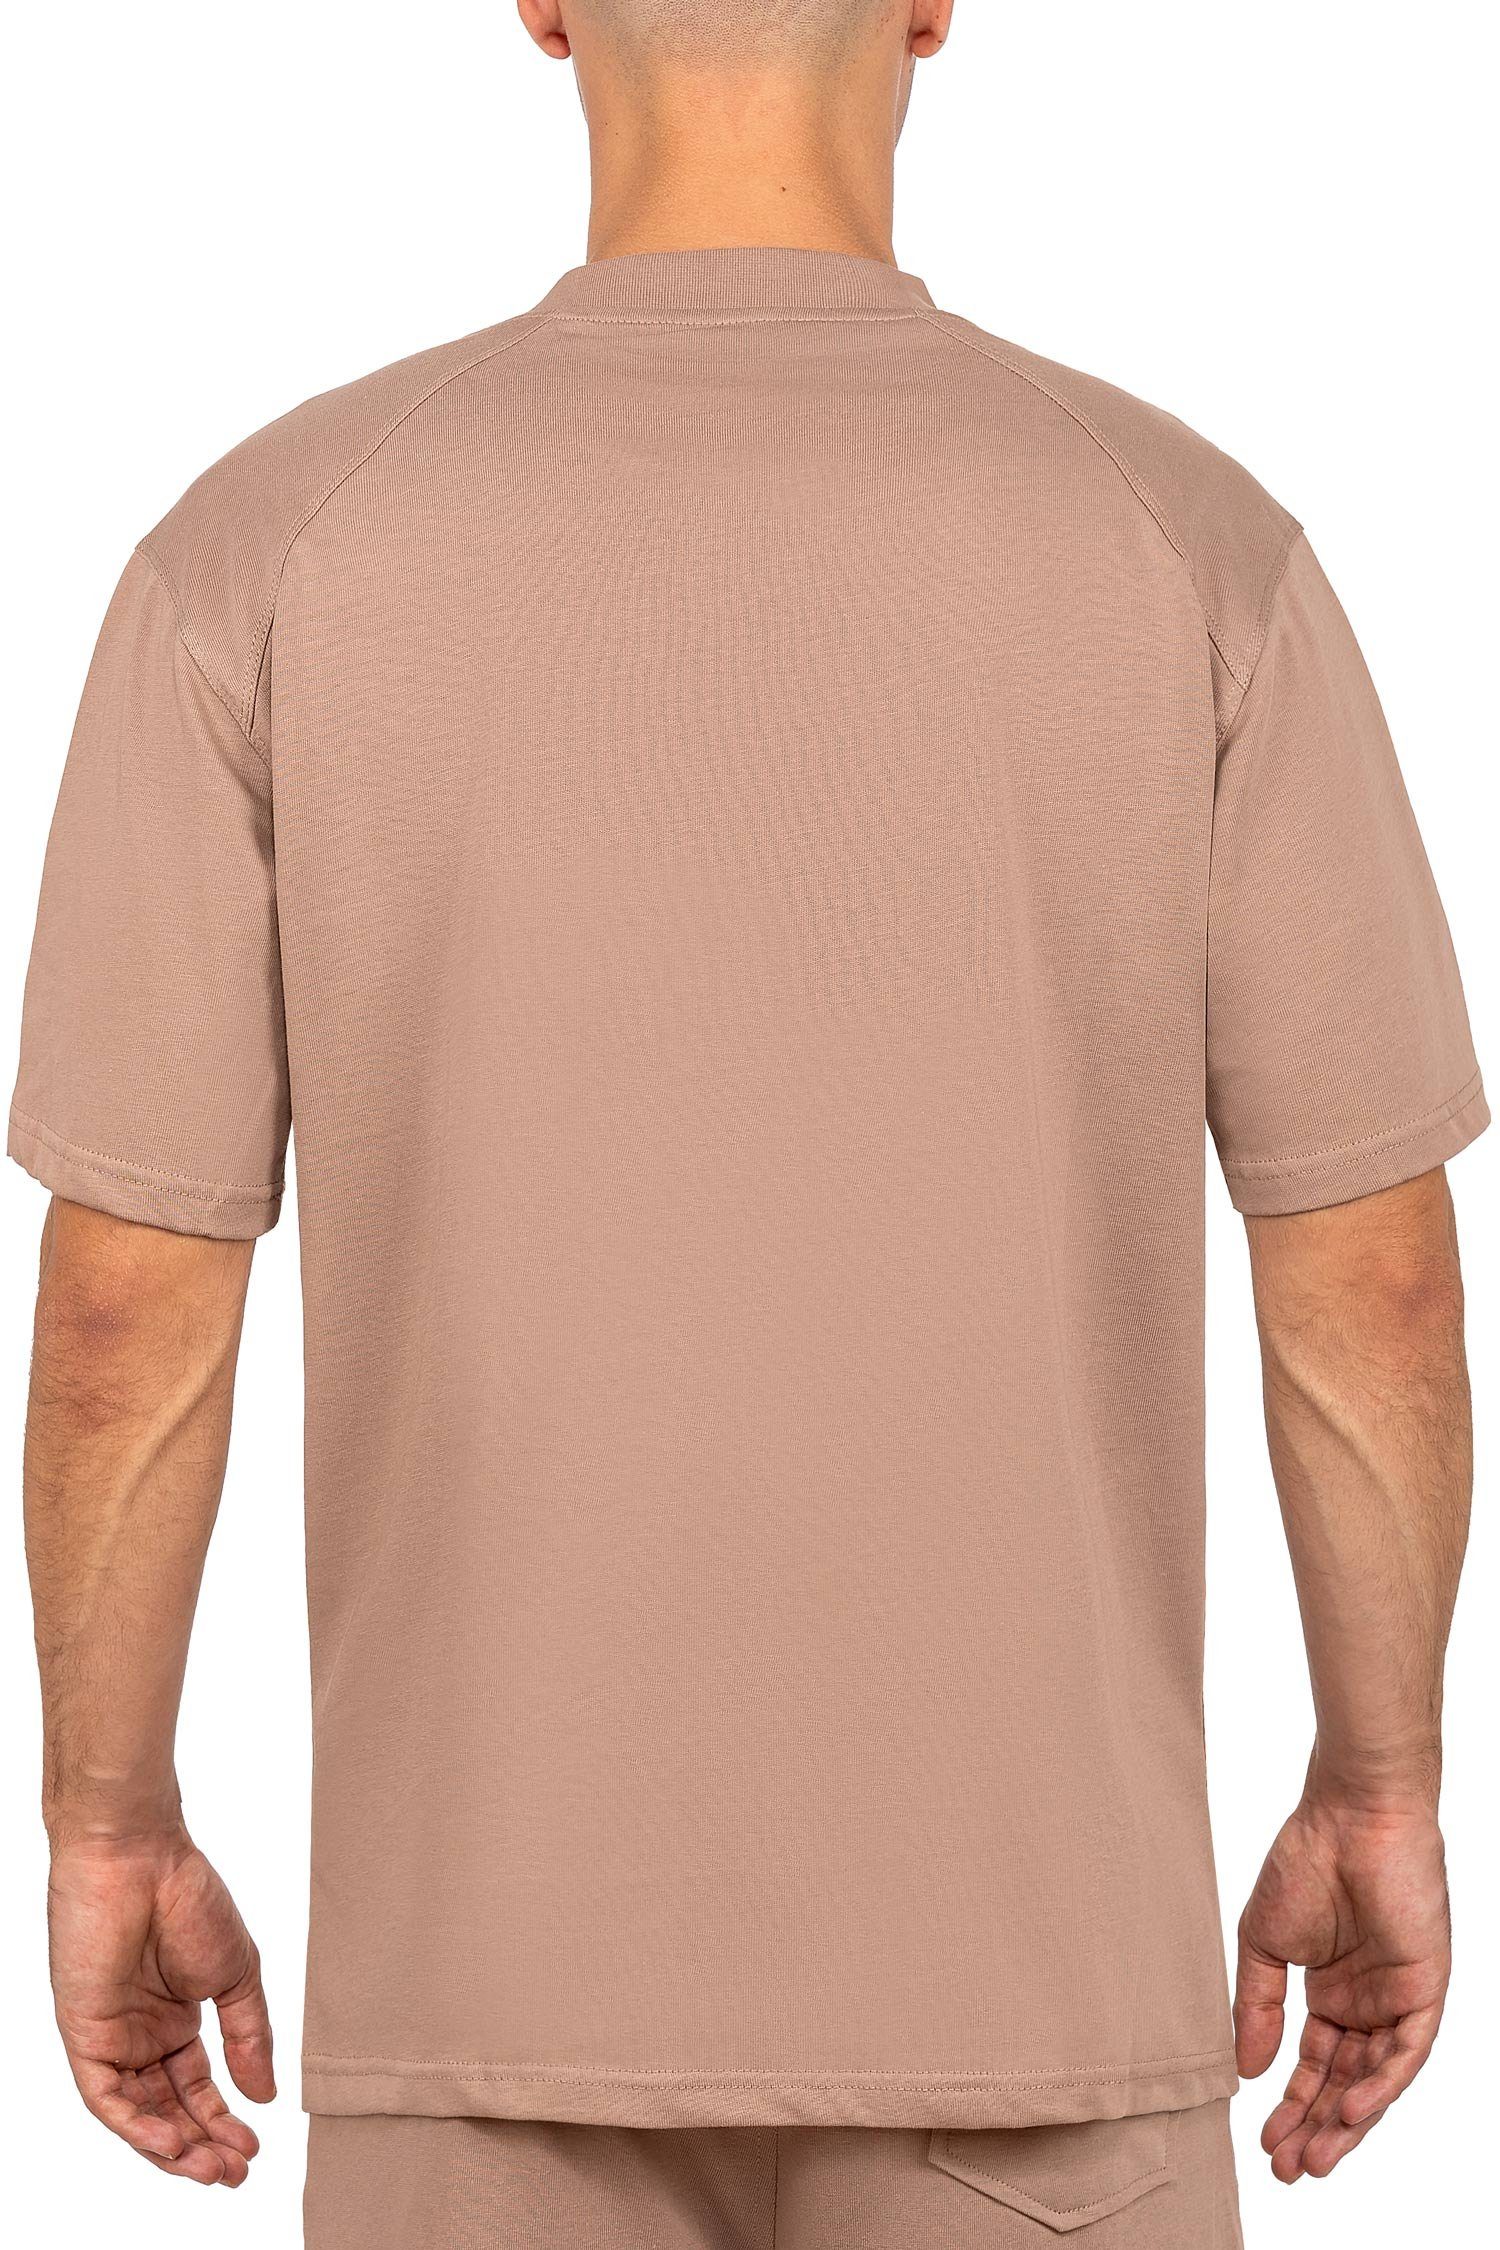 Kurzarm Oversize-Shirt 23RS041 Reichstadt Kragen T-shirt Casual am mit (1-tlg) Stitching Braun